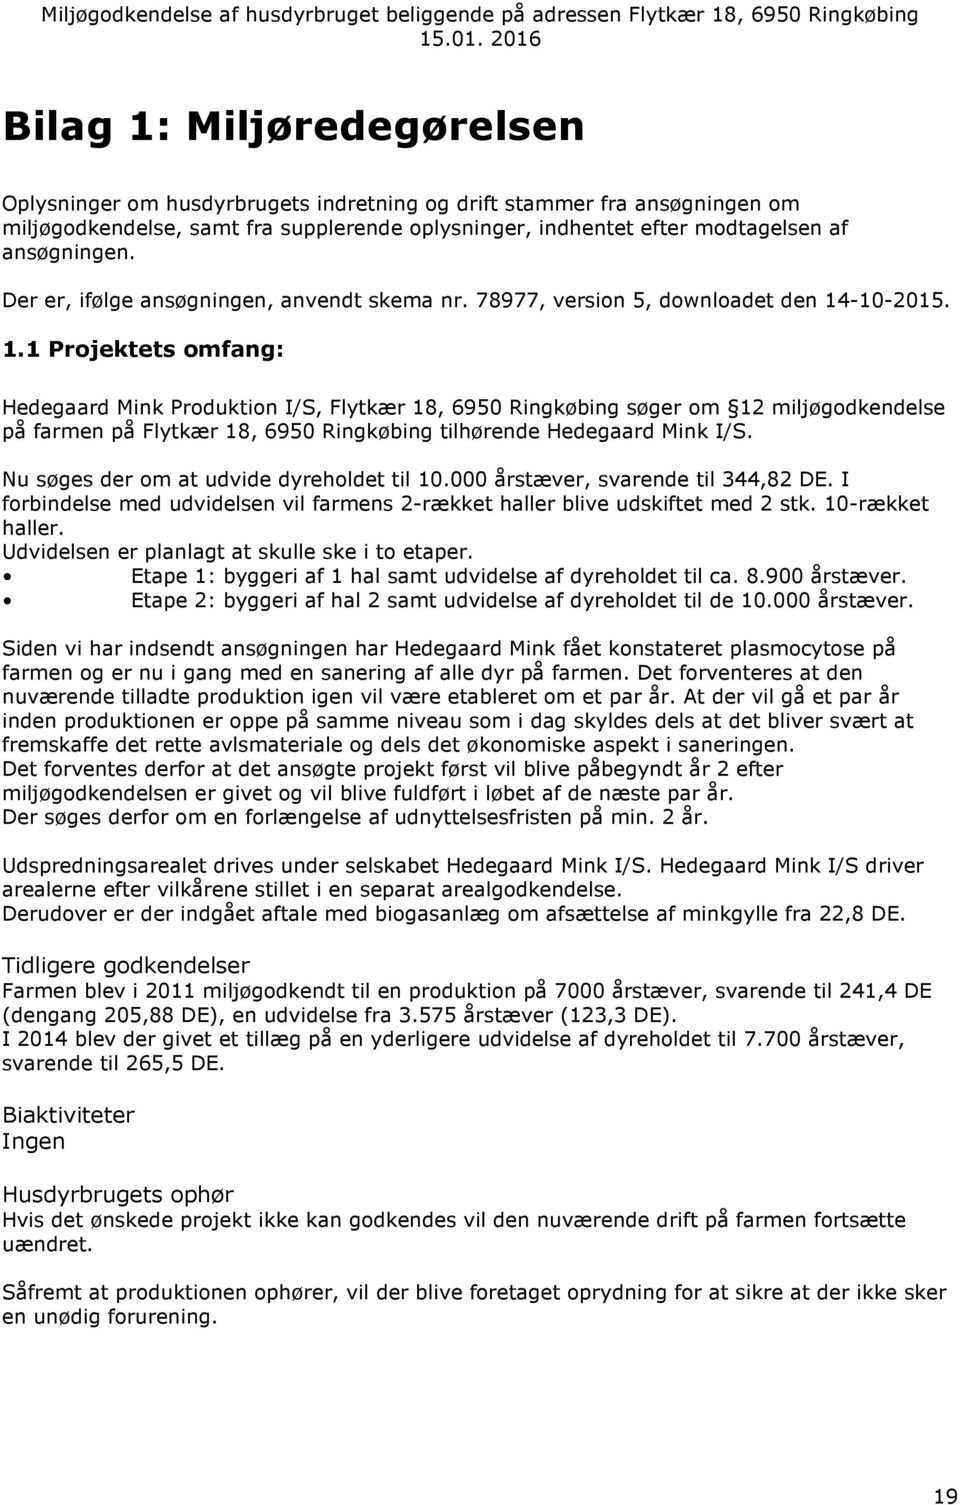 -10-2015. 1.1 Projektets omfang: Hedegaard Mink Produktion I/S, Flytkær 18, 6950 Ringkøbing søger om 12 miljøgodkendelse på farmen på Flytkær 18, 6950 Ringkøbing tilhørende Hedegaard Mink I/S.